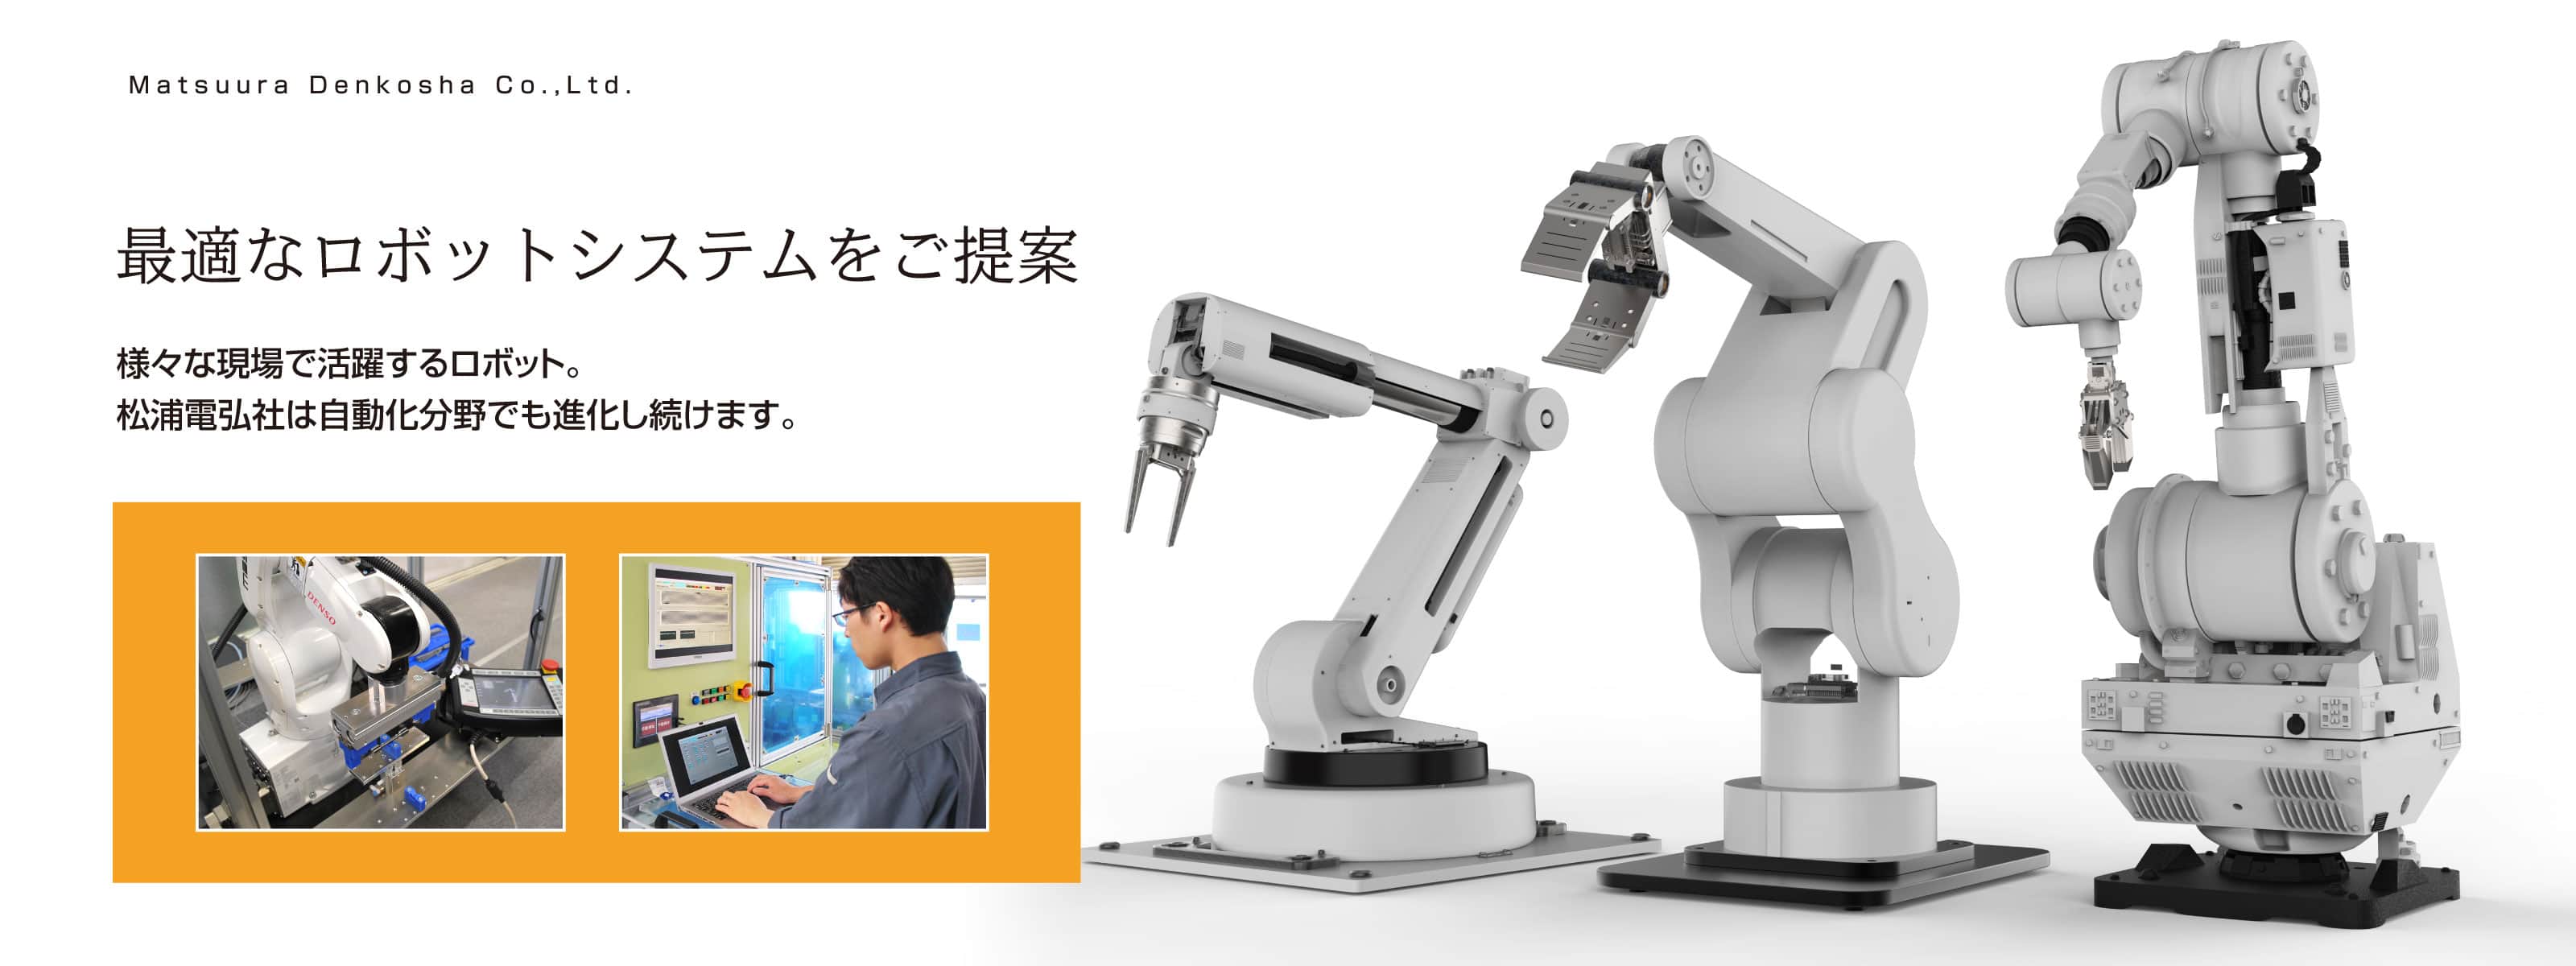 最適なロボットシステムご提案　松浦電弘社は自動化分野でも進化し続けます